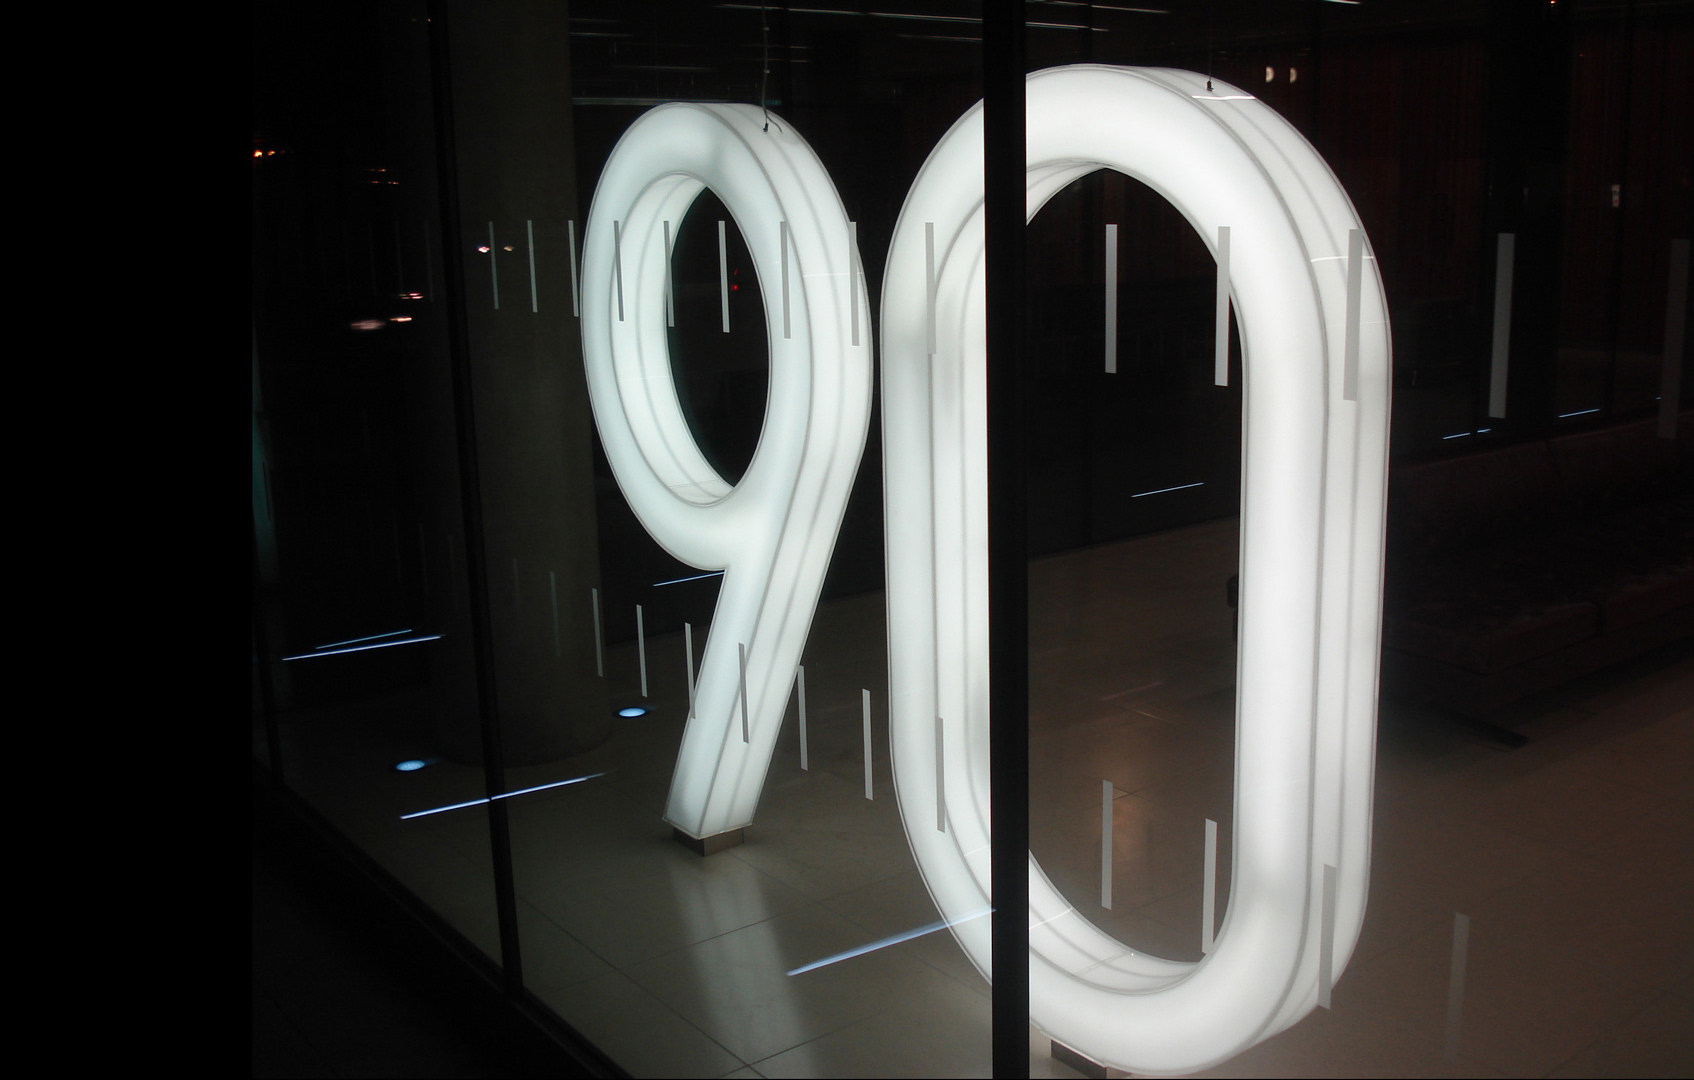 lighting installations qube 90 london lightlab 5